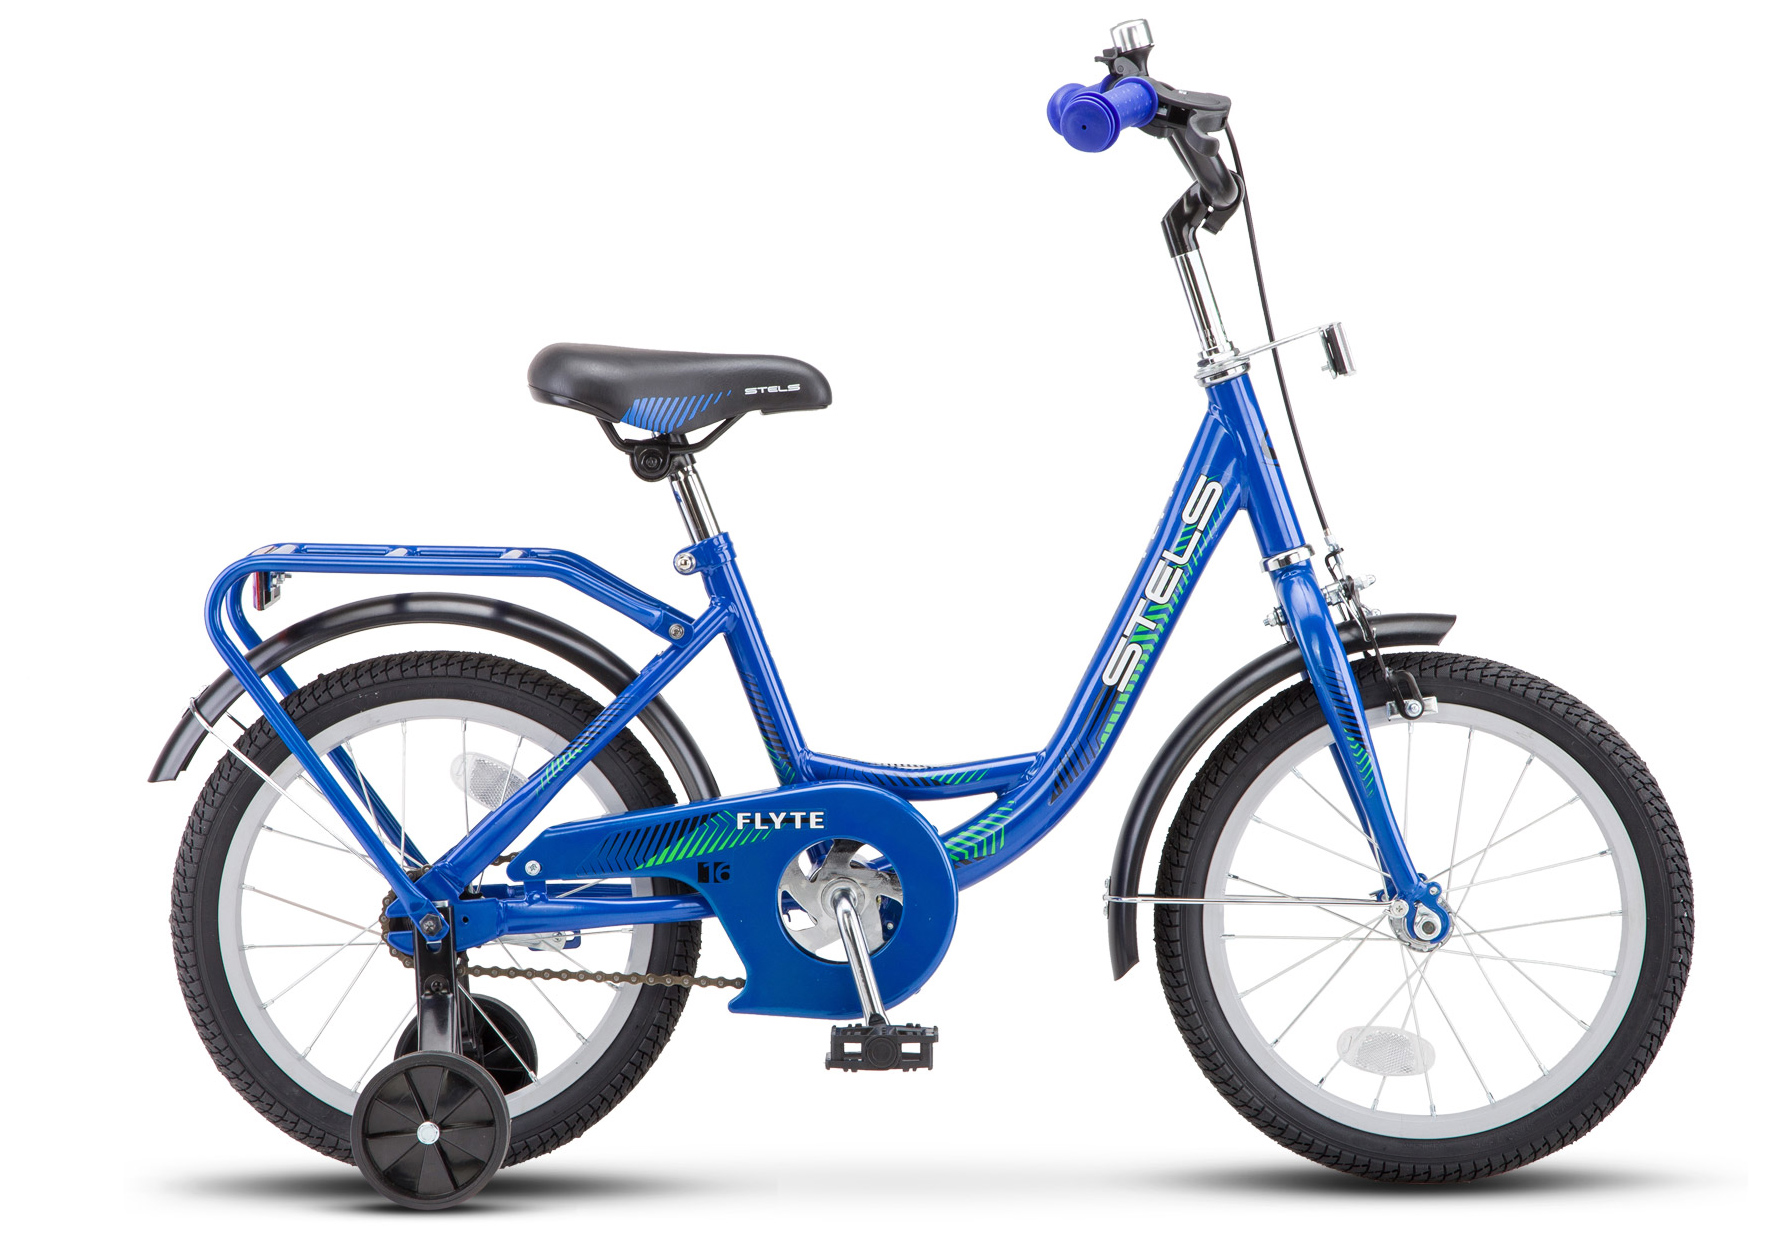  Отзывы о Трехколесный детский велосипед Stels Flyte 16 2019